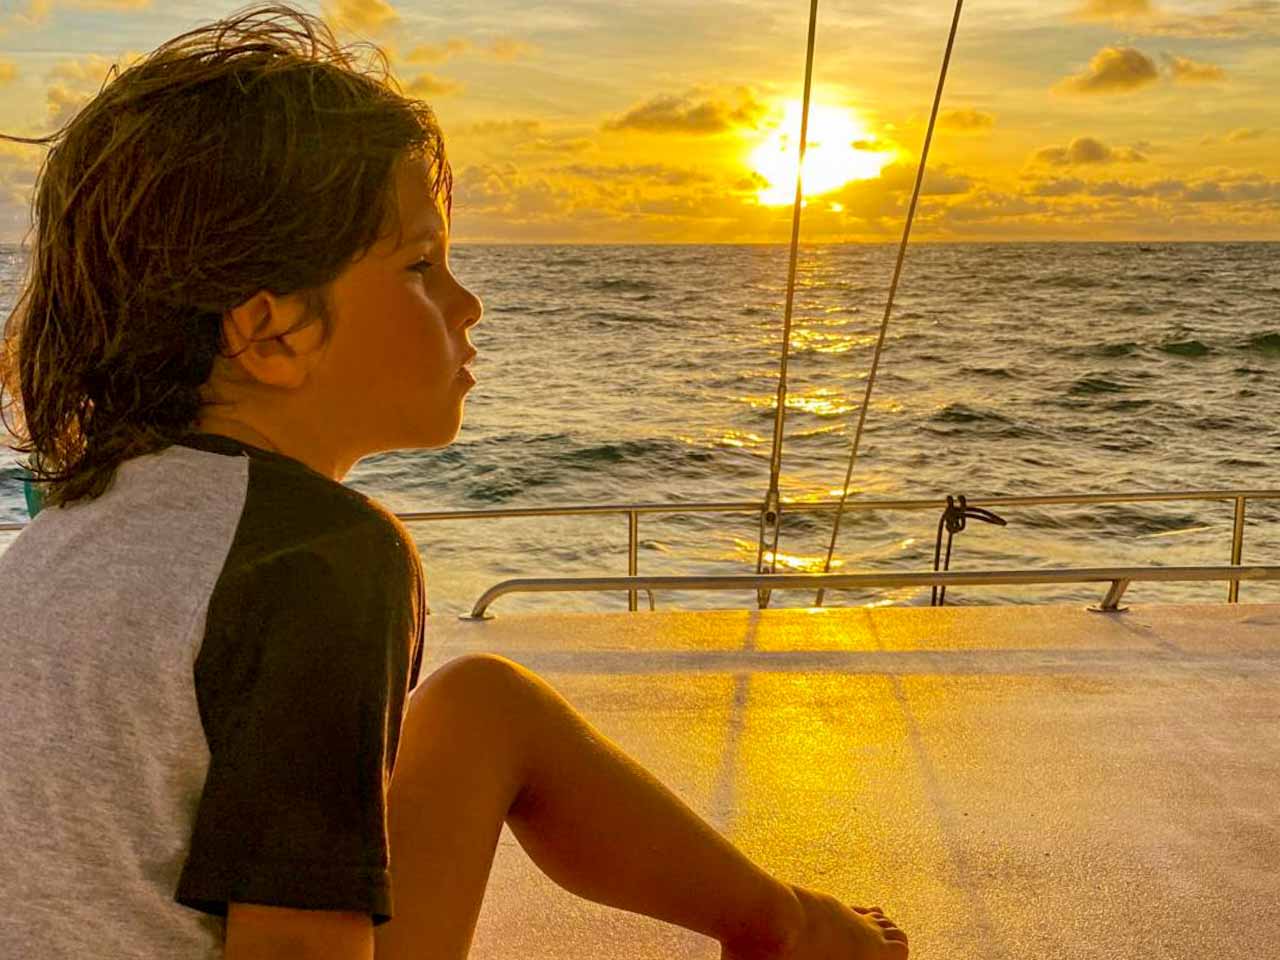 Leo curtindo o visual maravilhoso de um pôr do sol em alto mar em Phuket.